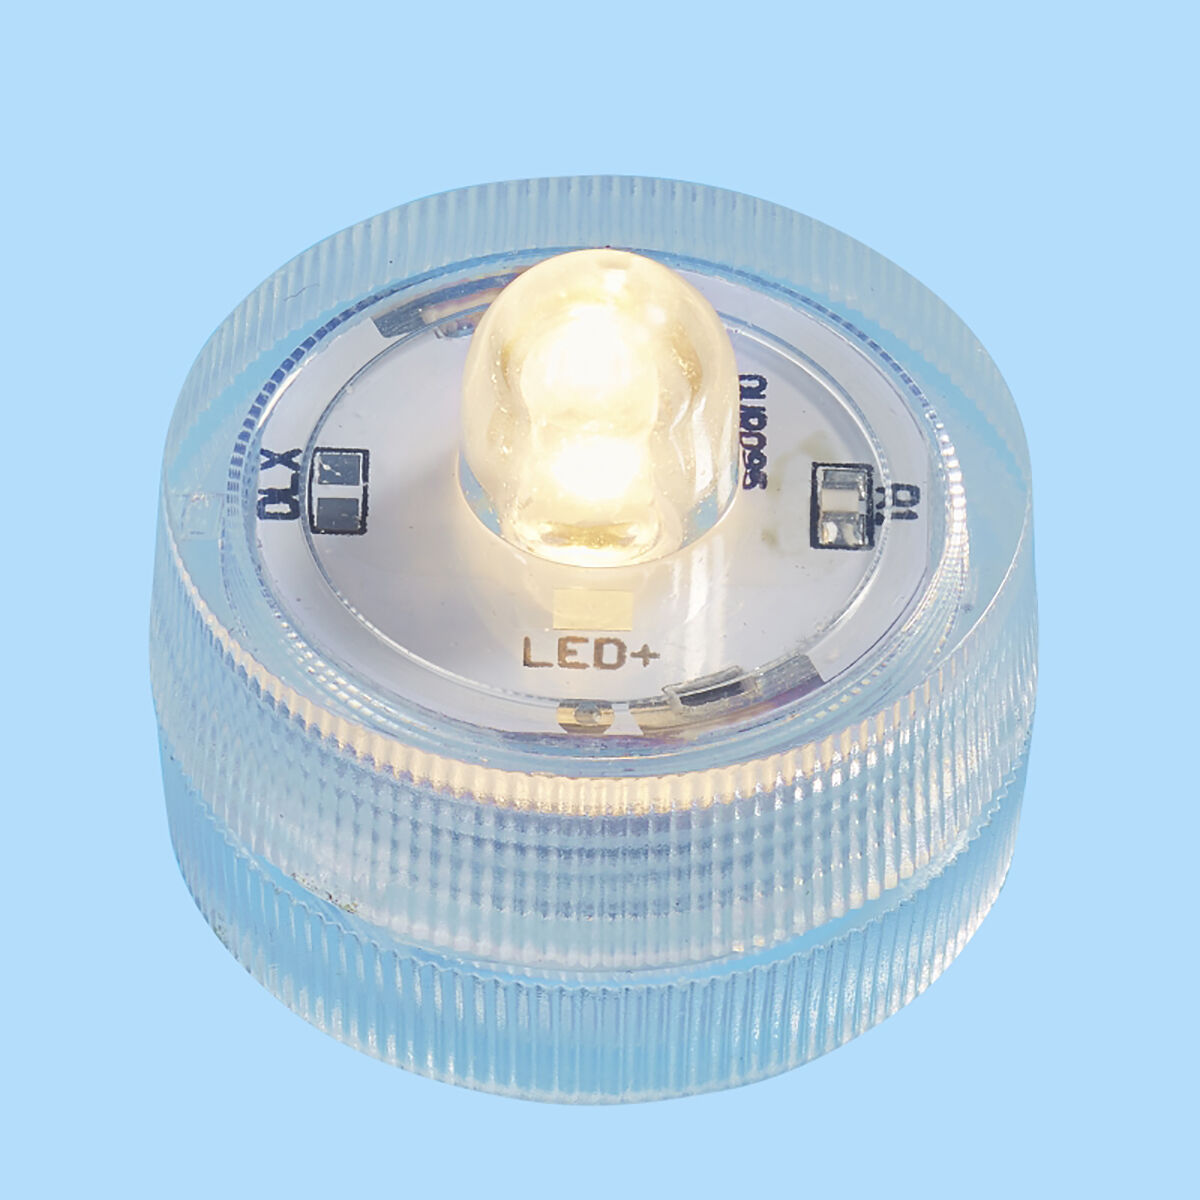 NEU LED-Teelicht mit Batterie, wasserdicht, Brenndauer ca. 48 Stunden